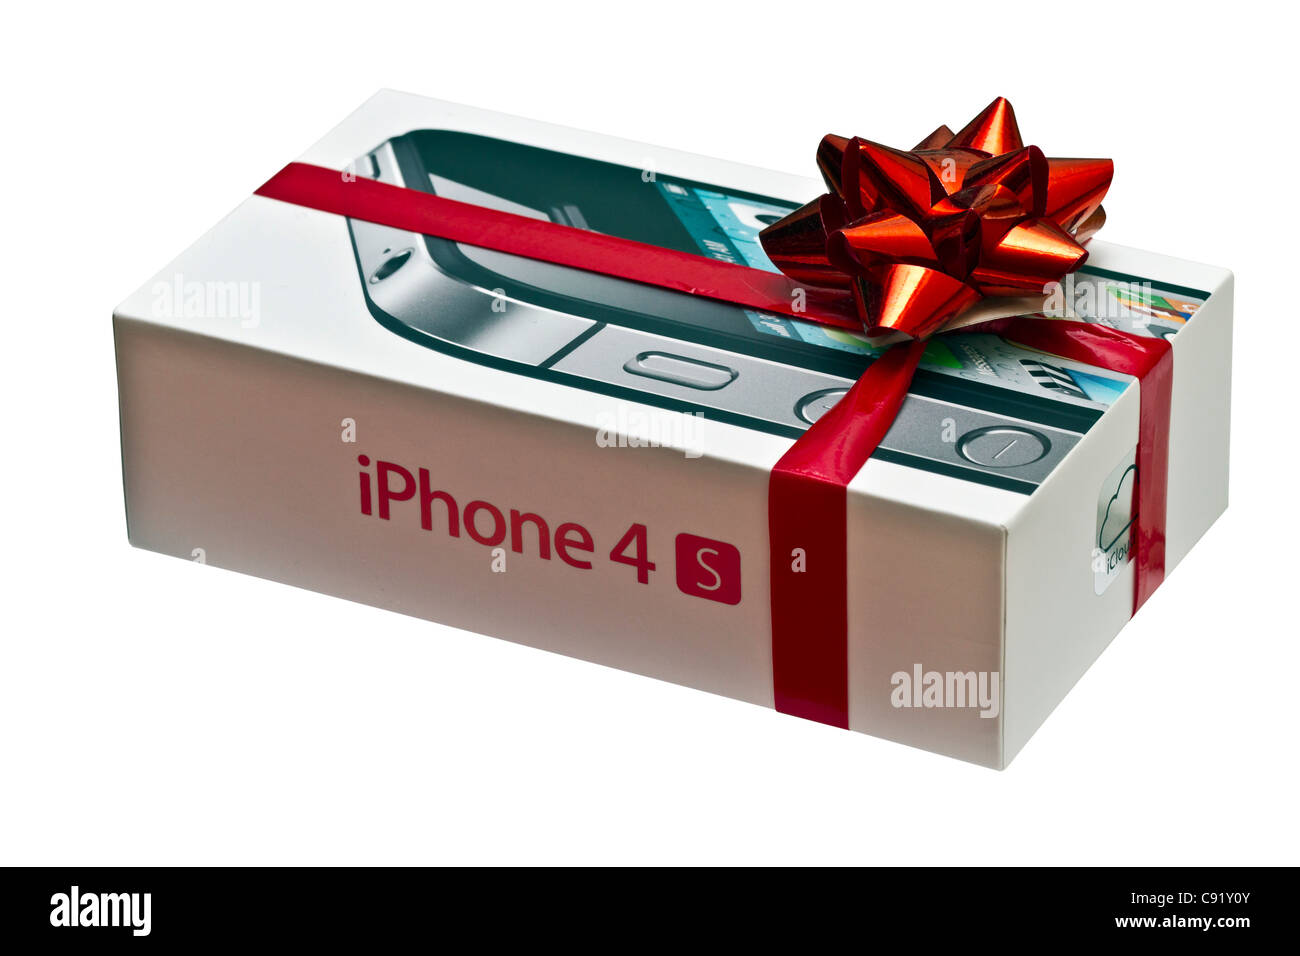 Iphone gift immagini e fotografie stock ad alta risoluzione - Alamy